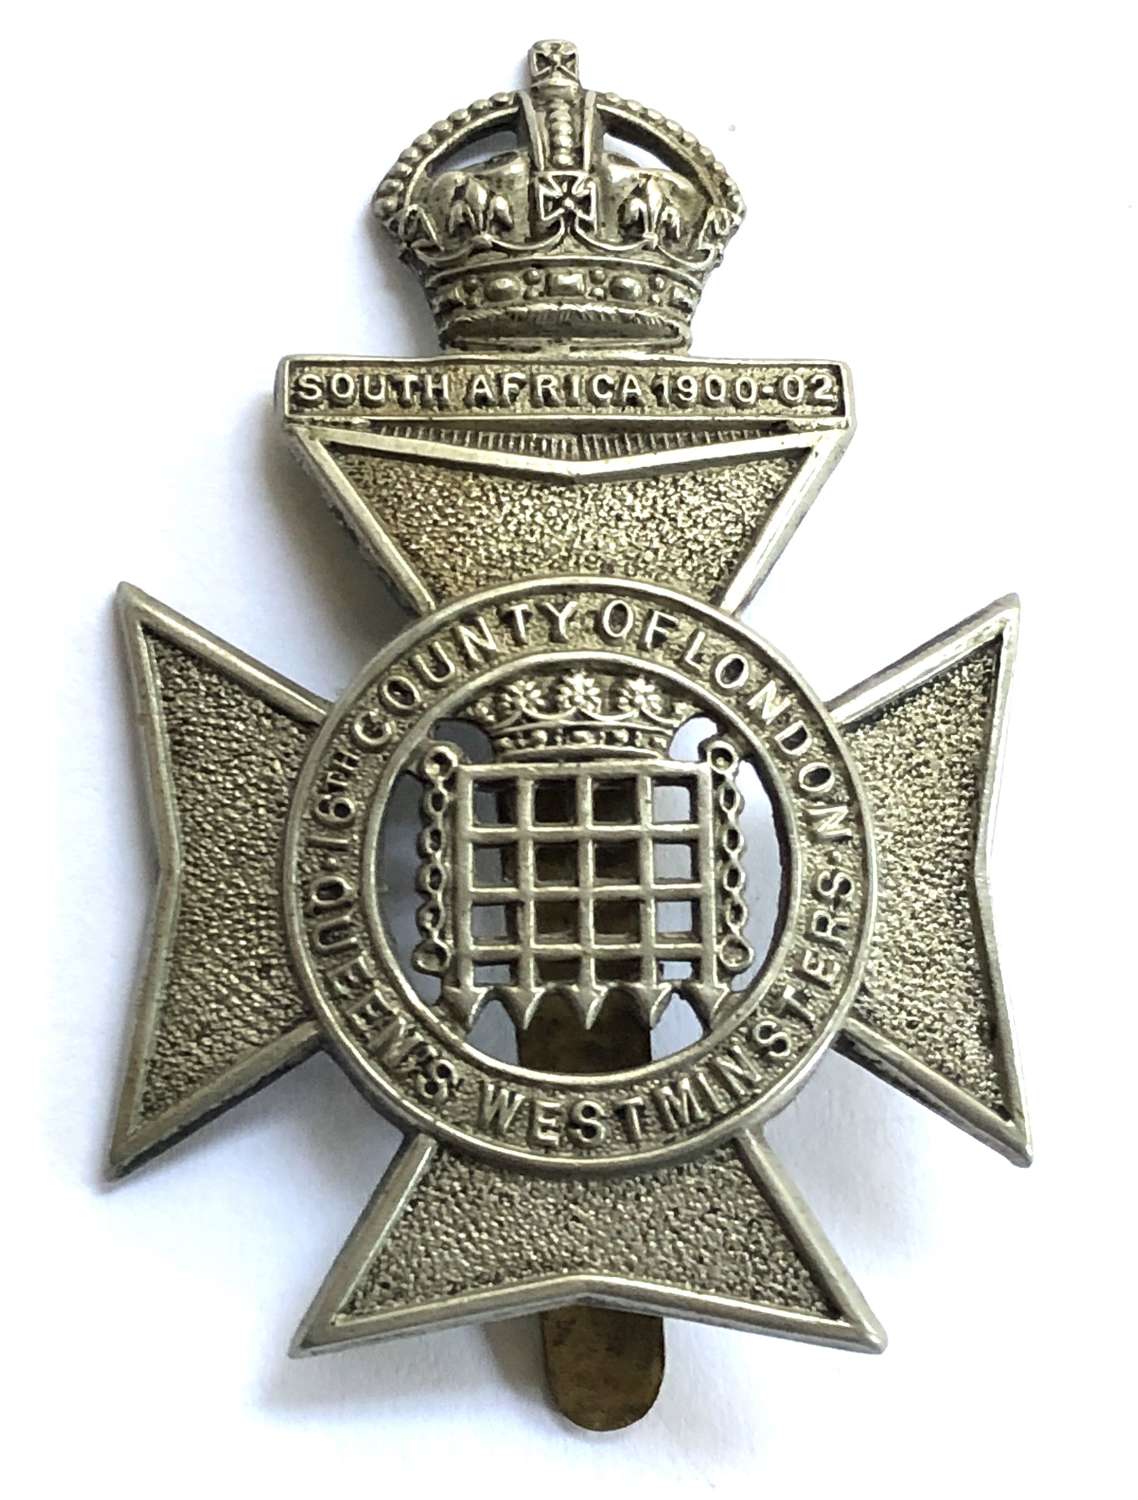 Queen’s Westminster Rifle Volunteers white metal cap badge c1908-22